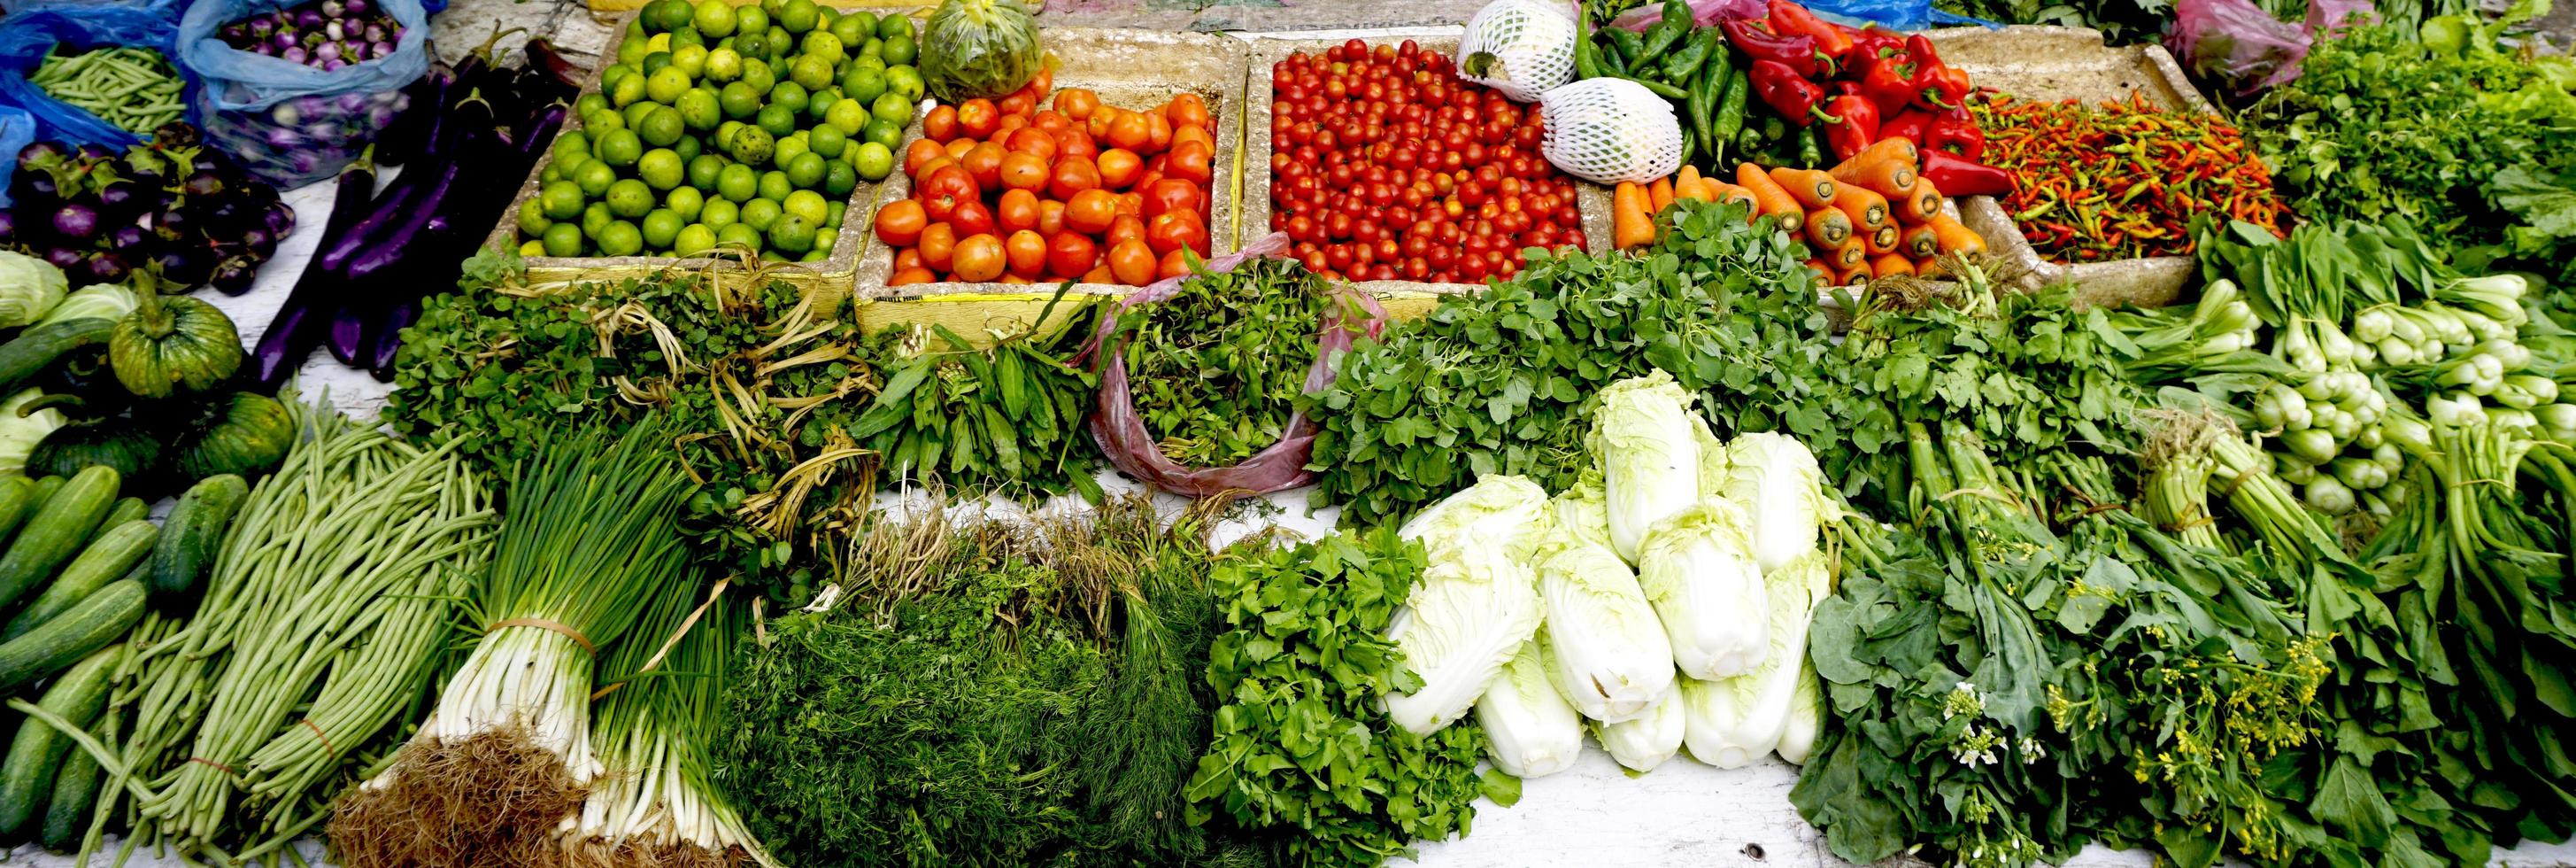 légumes frais et biologiques au marché local des agriculteurs photo